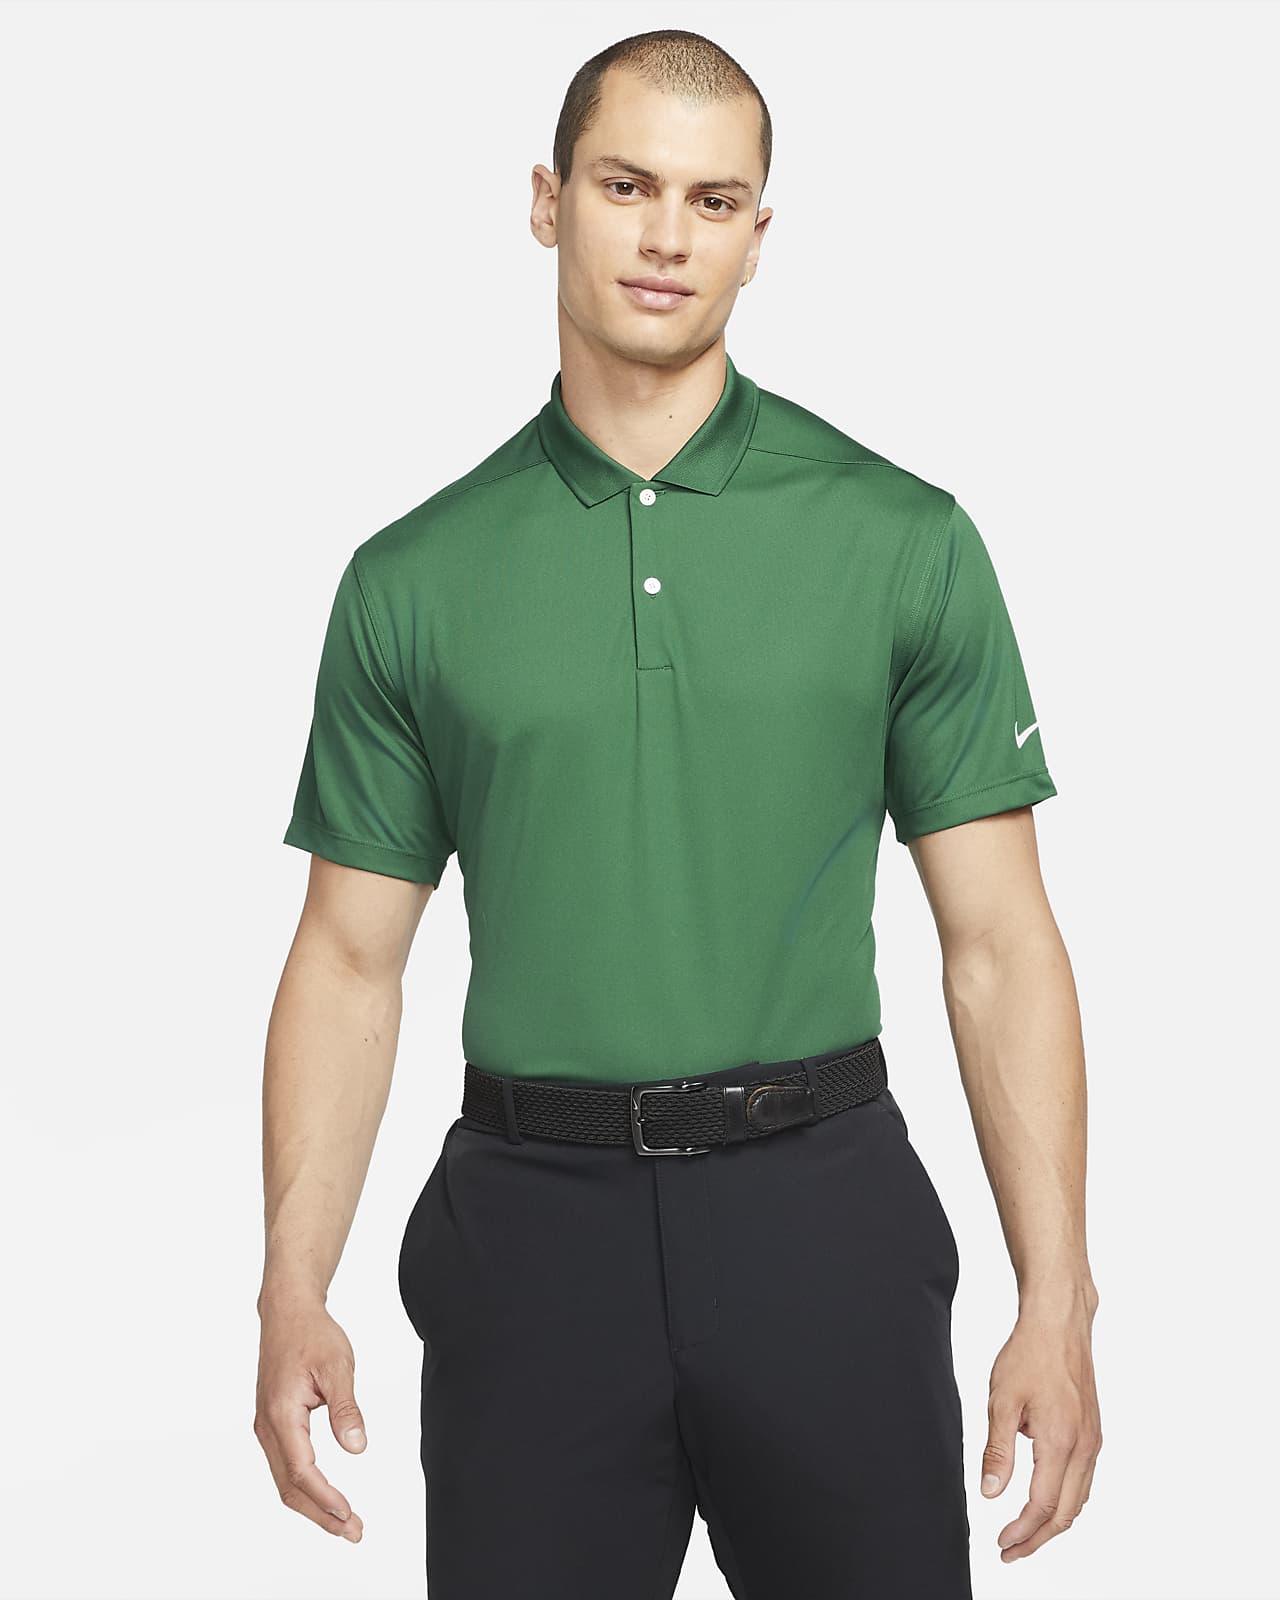 green golf shirt